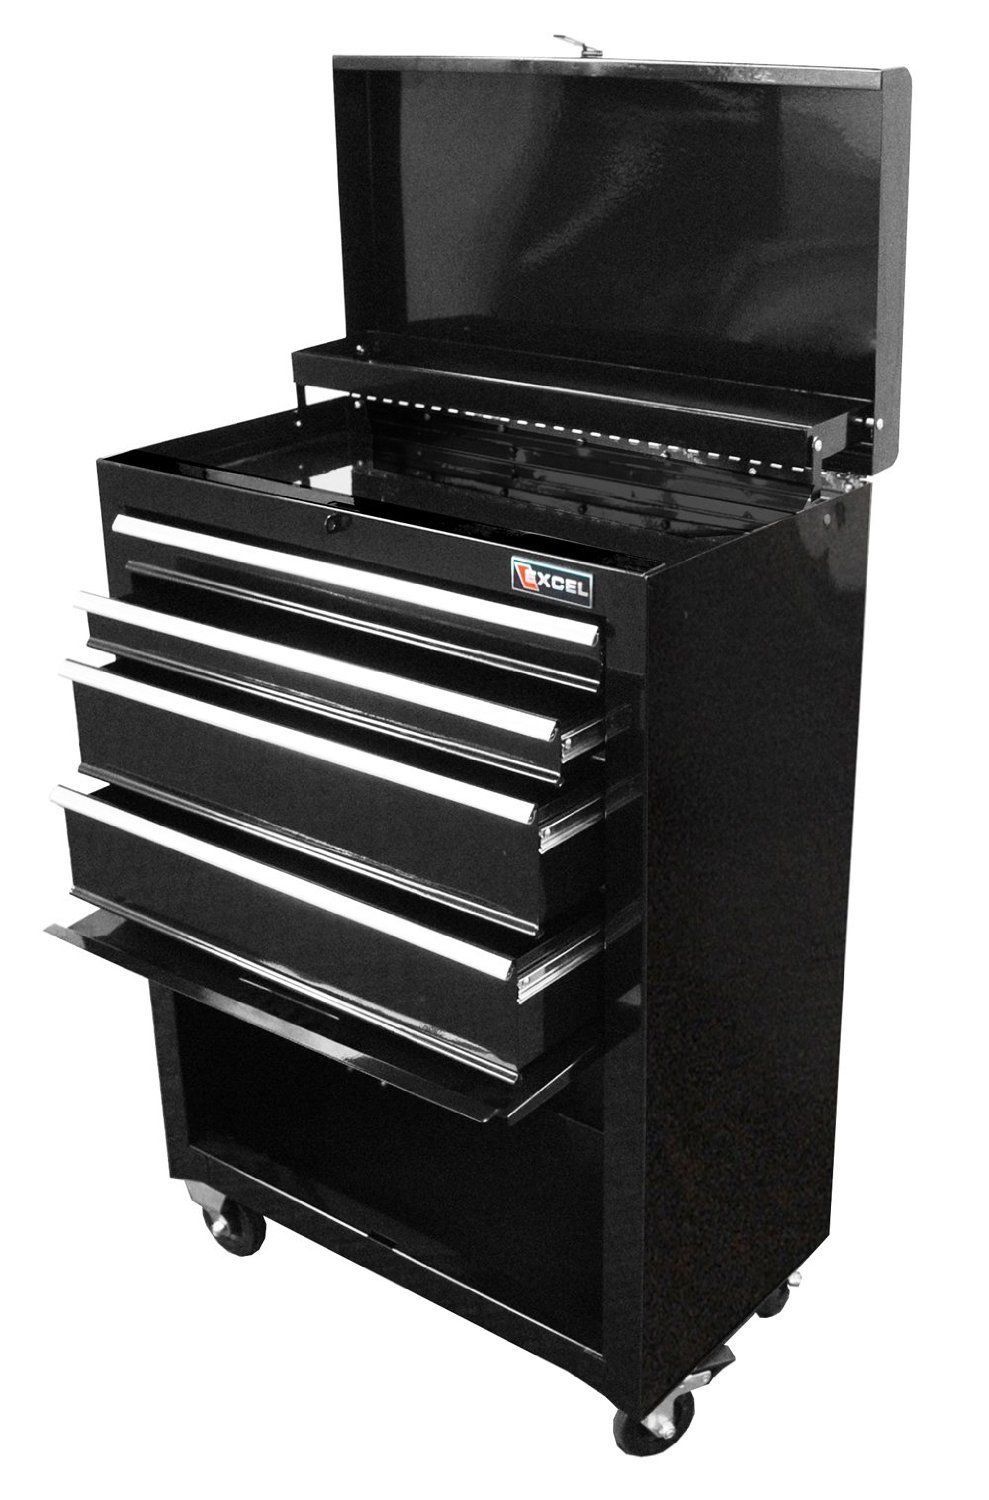 Cabinet Drawer Roller Excel Steel Tool Storage Black Box 22 Inch Chest Garage - $189.00